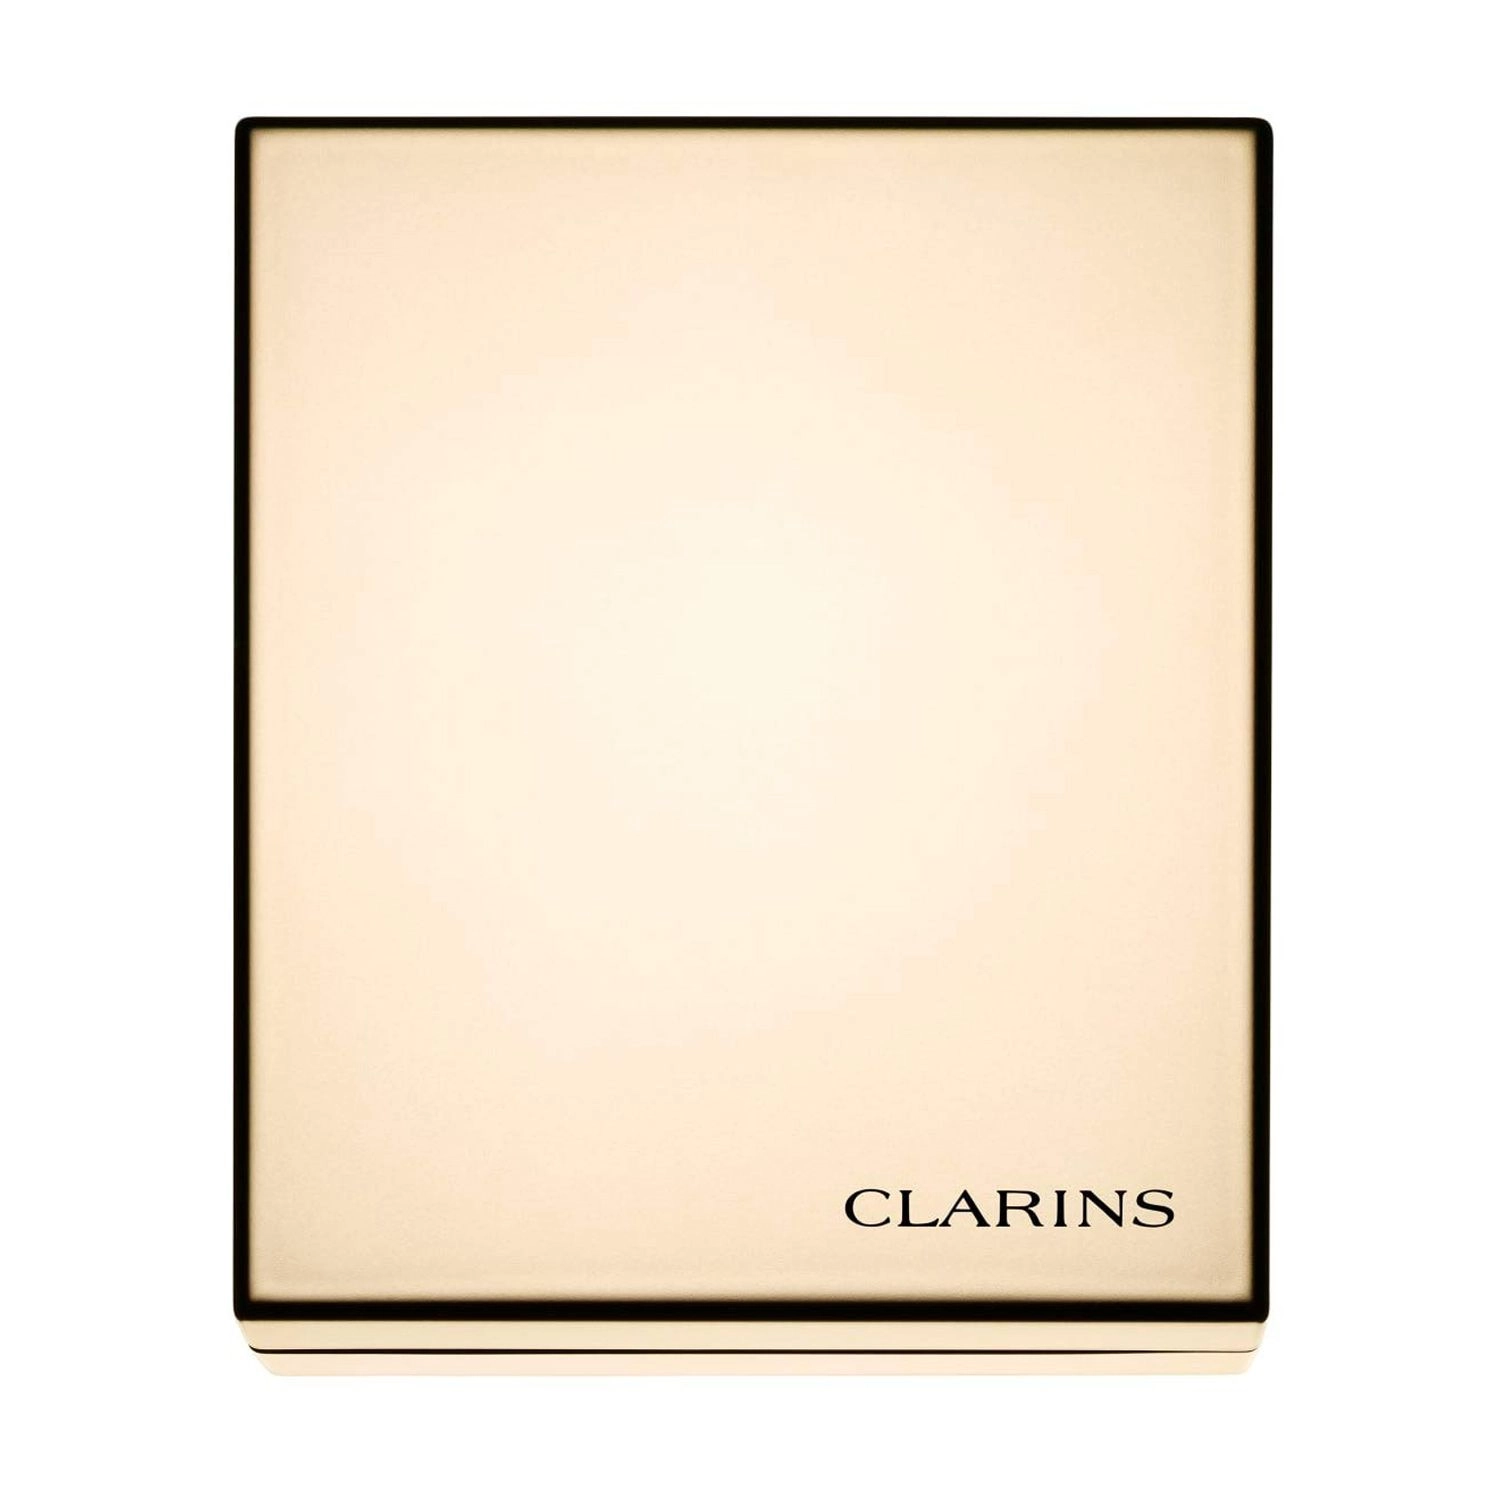 Clarins Компактная стойкая тональная крем-пудра для лица Everlasting Compact Foundation SPF 9, 109 Wheat, 10 г - фото N3